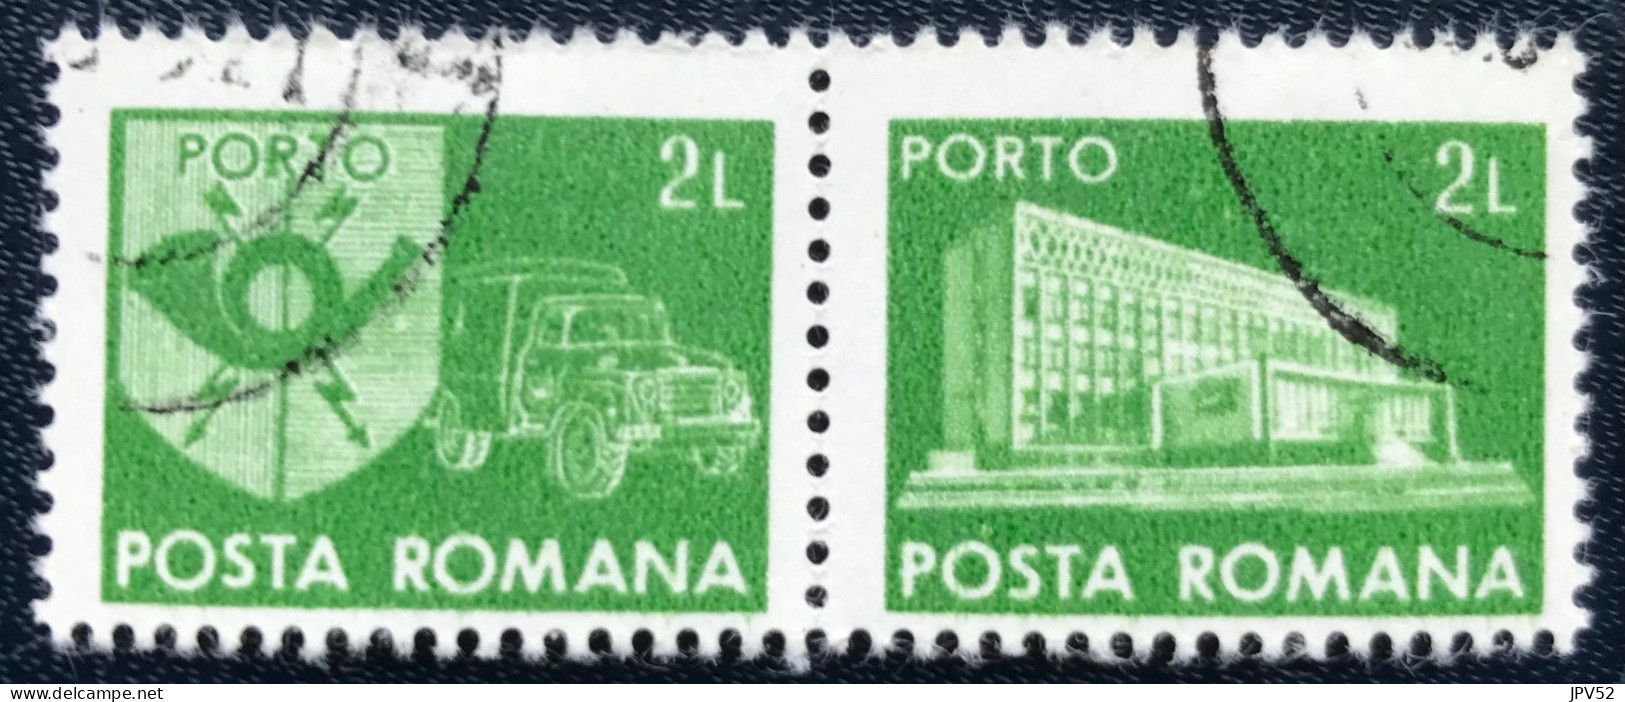 Romana - Roemenië - C14/53 - 1982 - (°)used - Michel 128 - Postkantoor & Postembleem & Postvoertuig - Strafport